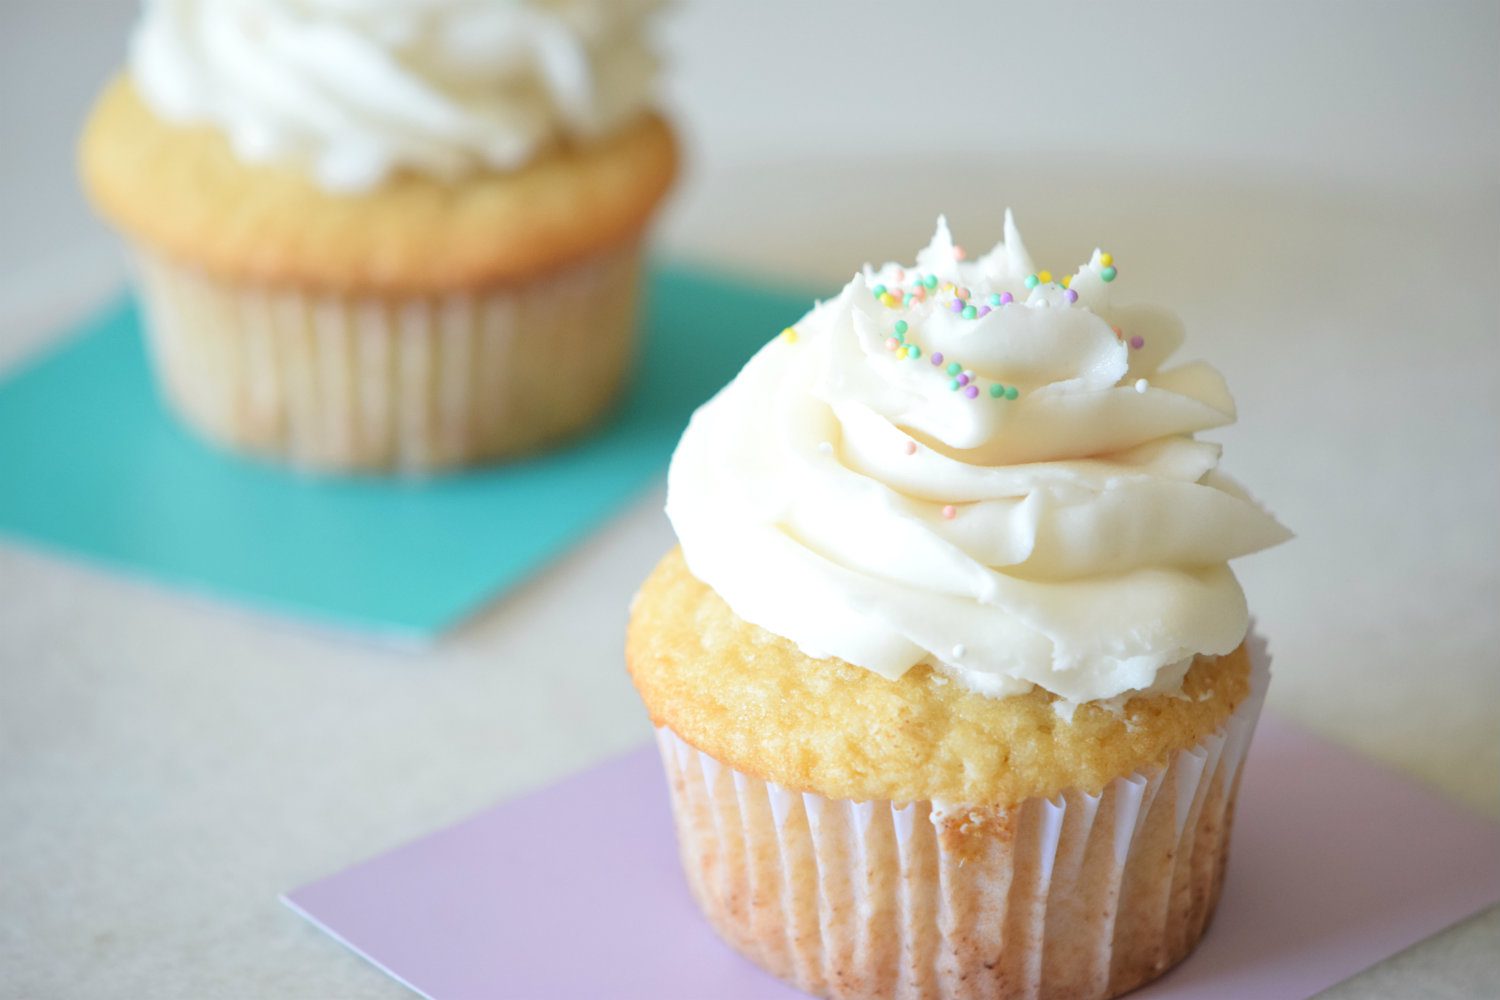 Funfetti Cupcakes Recipe